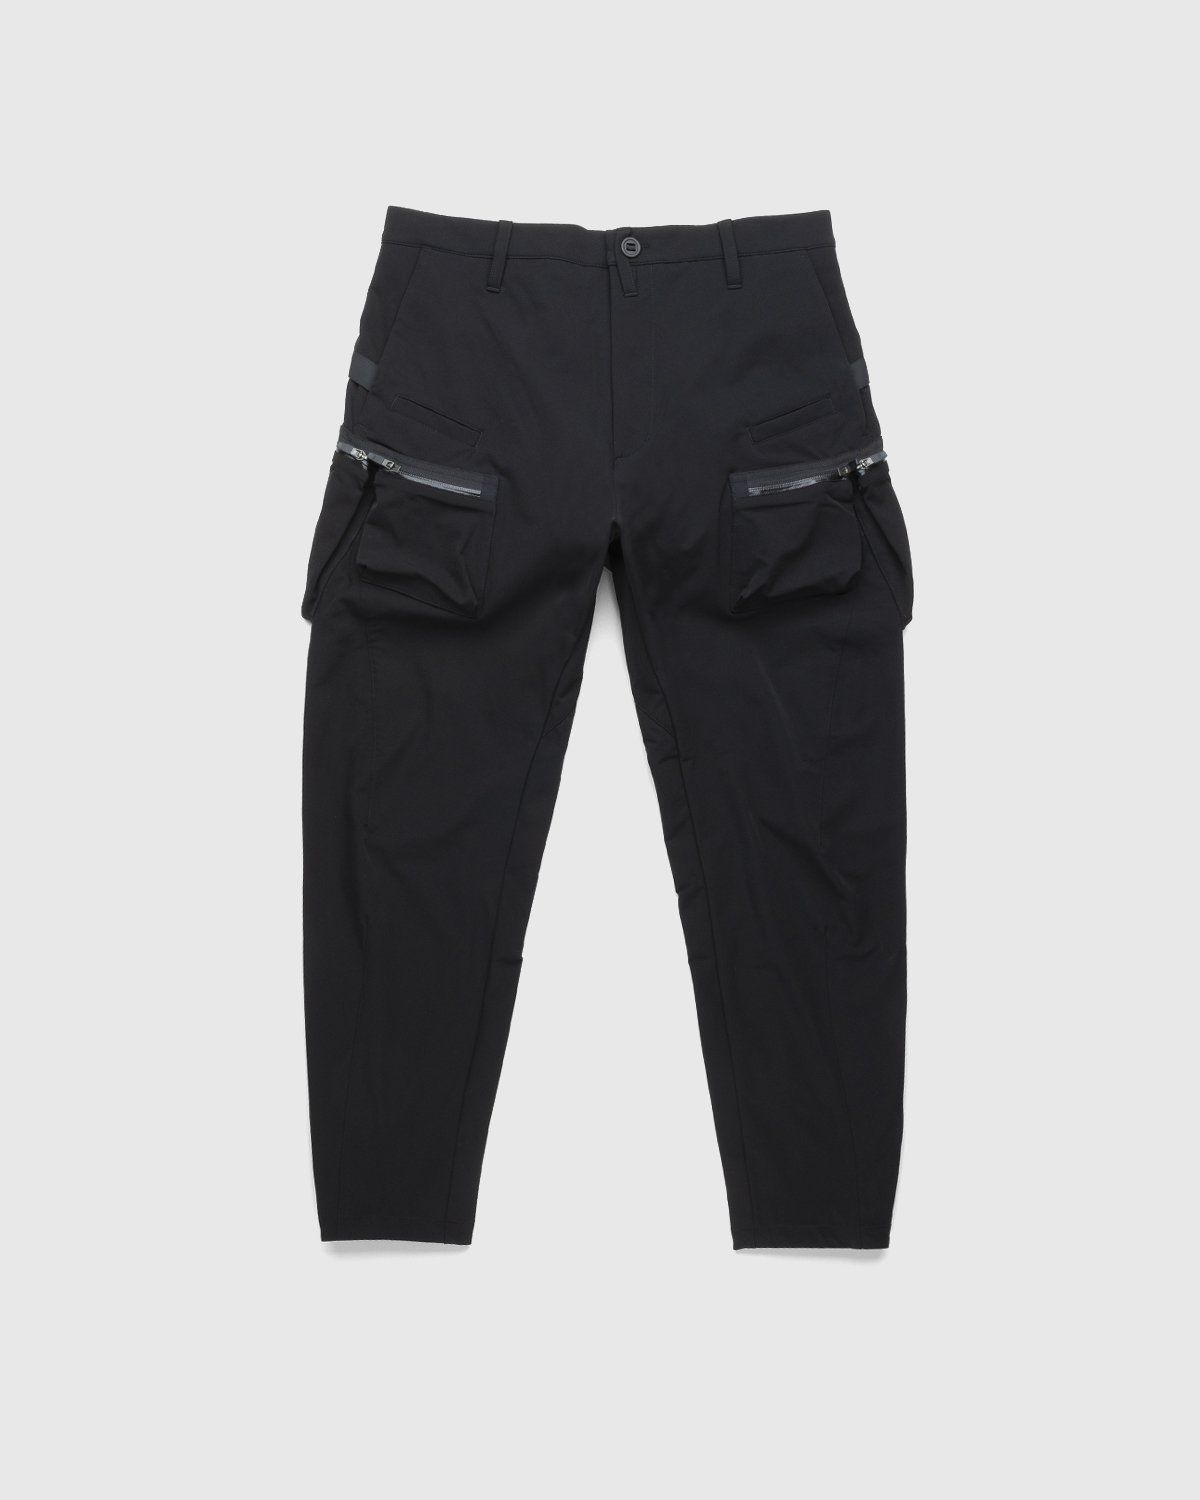 ACRONYM – P41-DS Pant Black - Pants - Black - Image 1